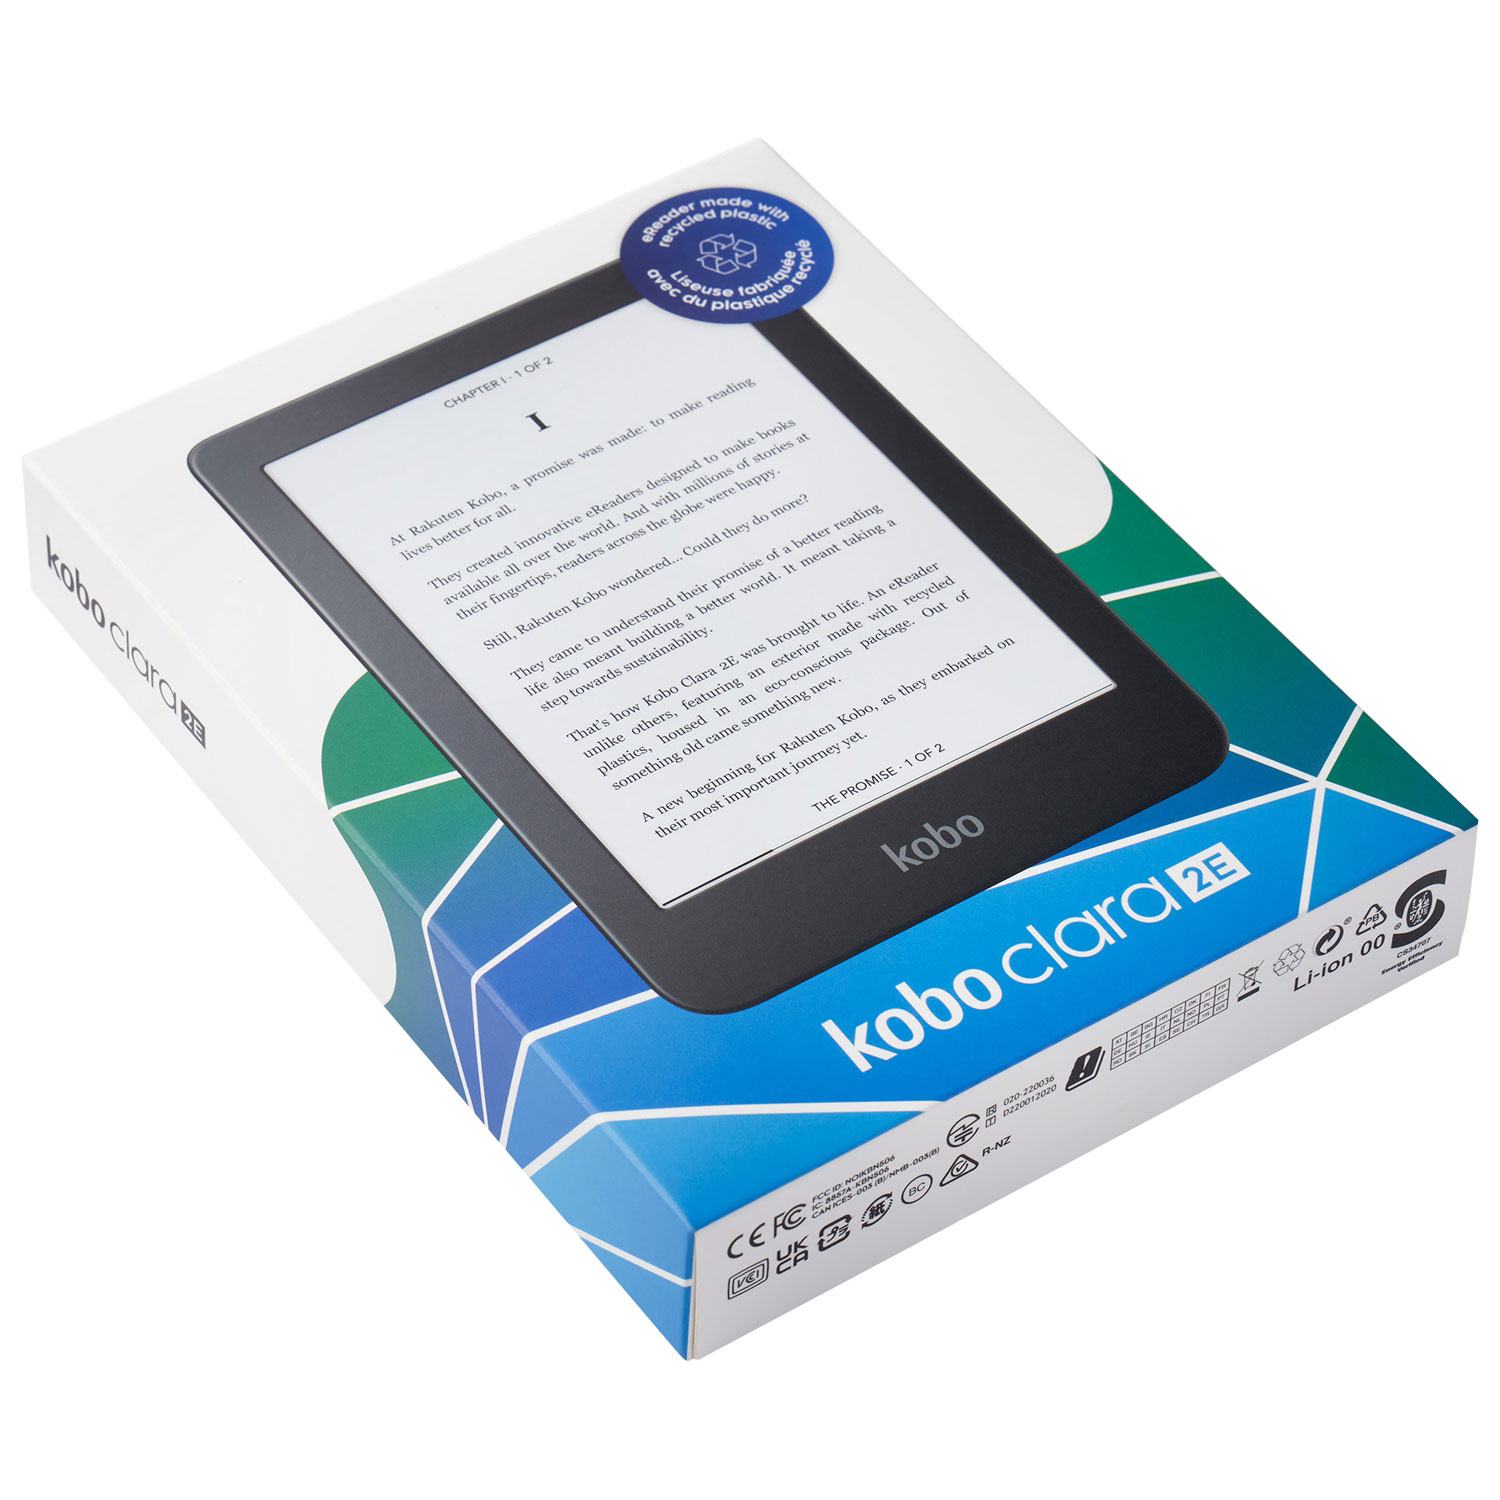 Kobo lance deux nouvelles liseuses dotées du Bluetooth, pour profiter des  livres audio